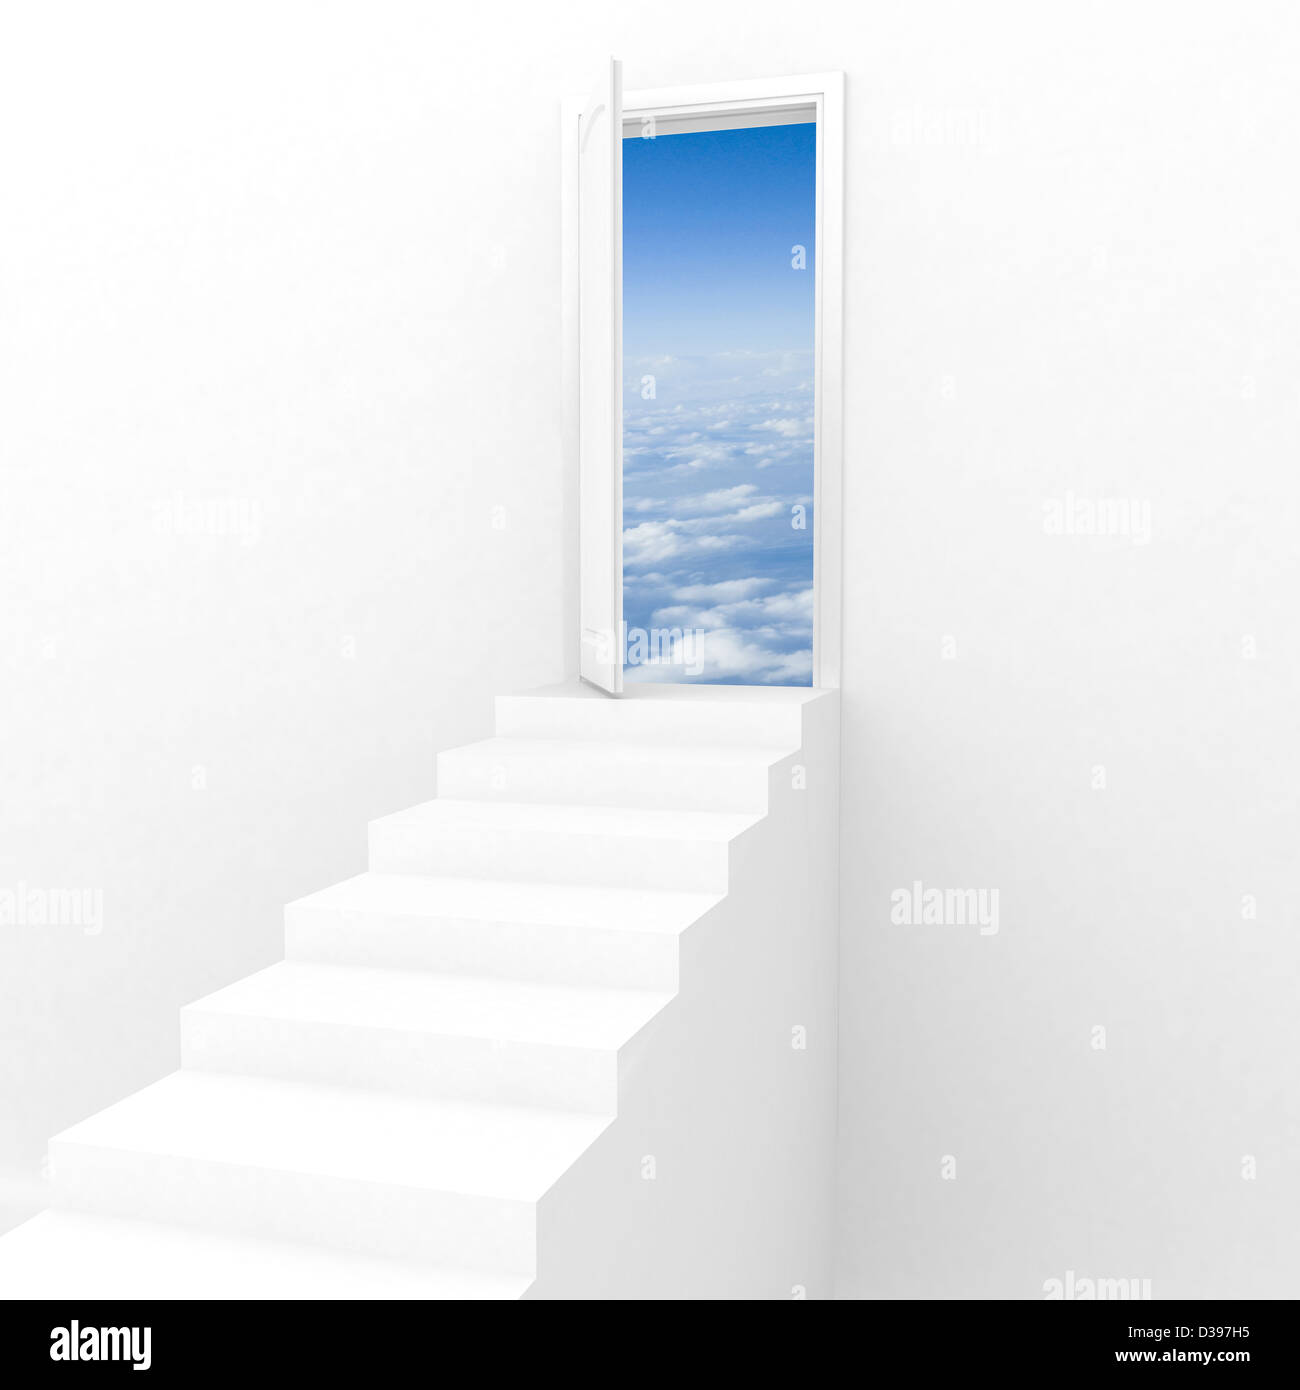 Immagine illustrativa della scalinata che conduce a una nuova dimensione Foto Stock